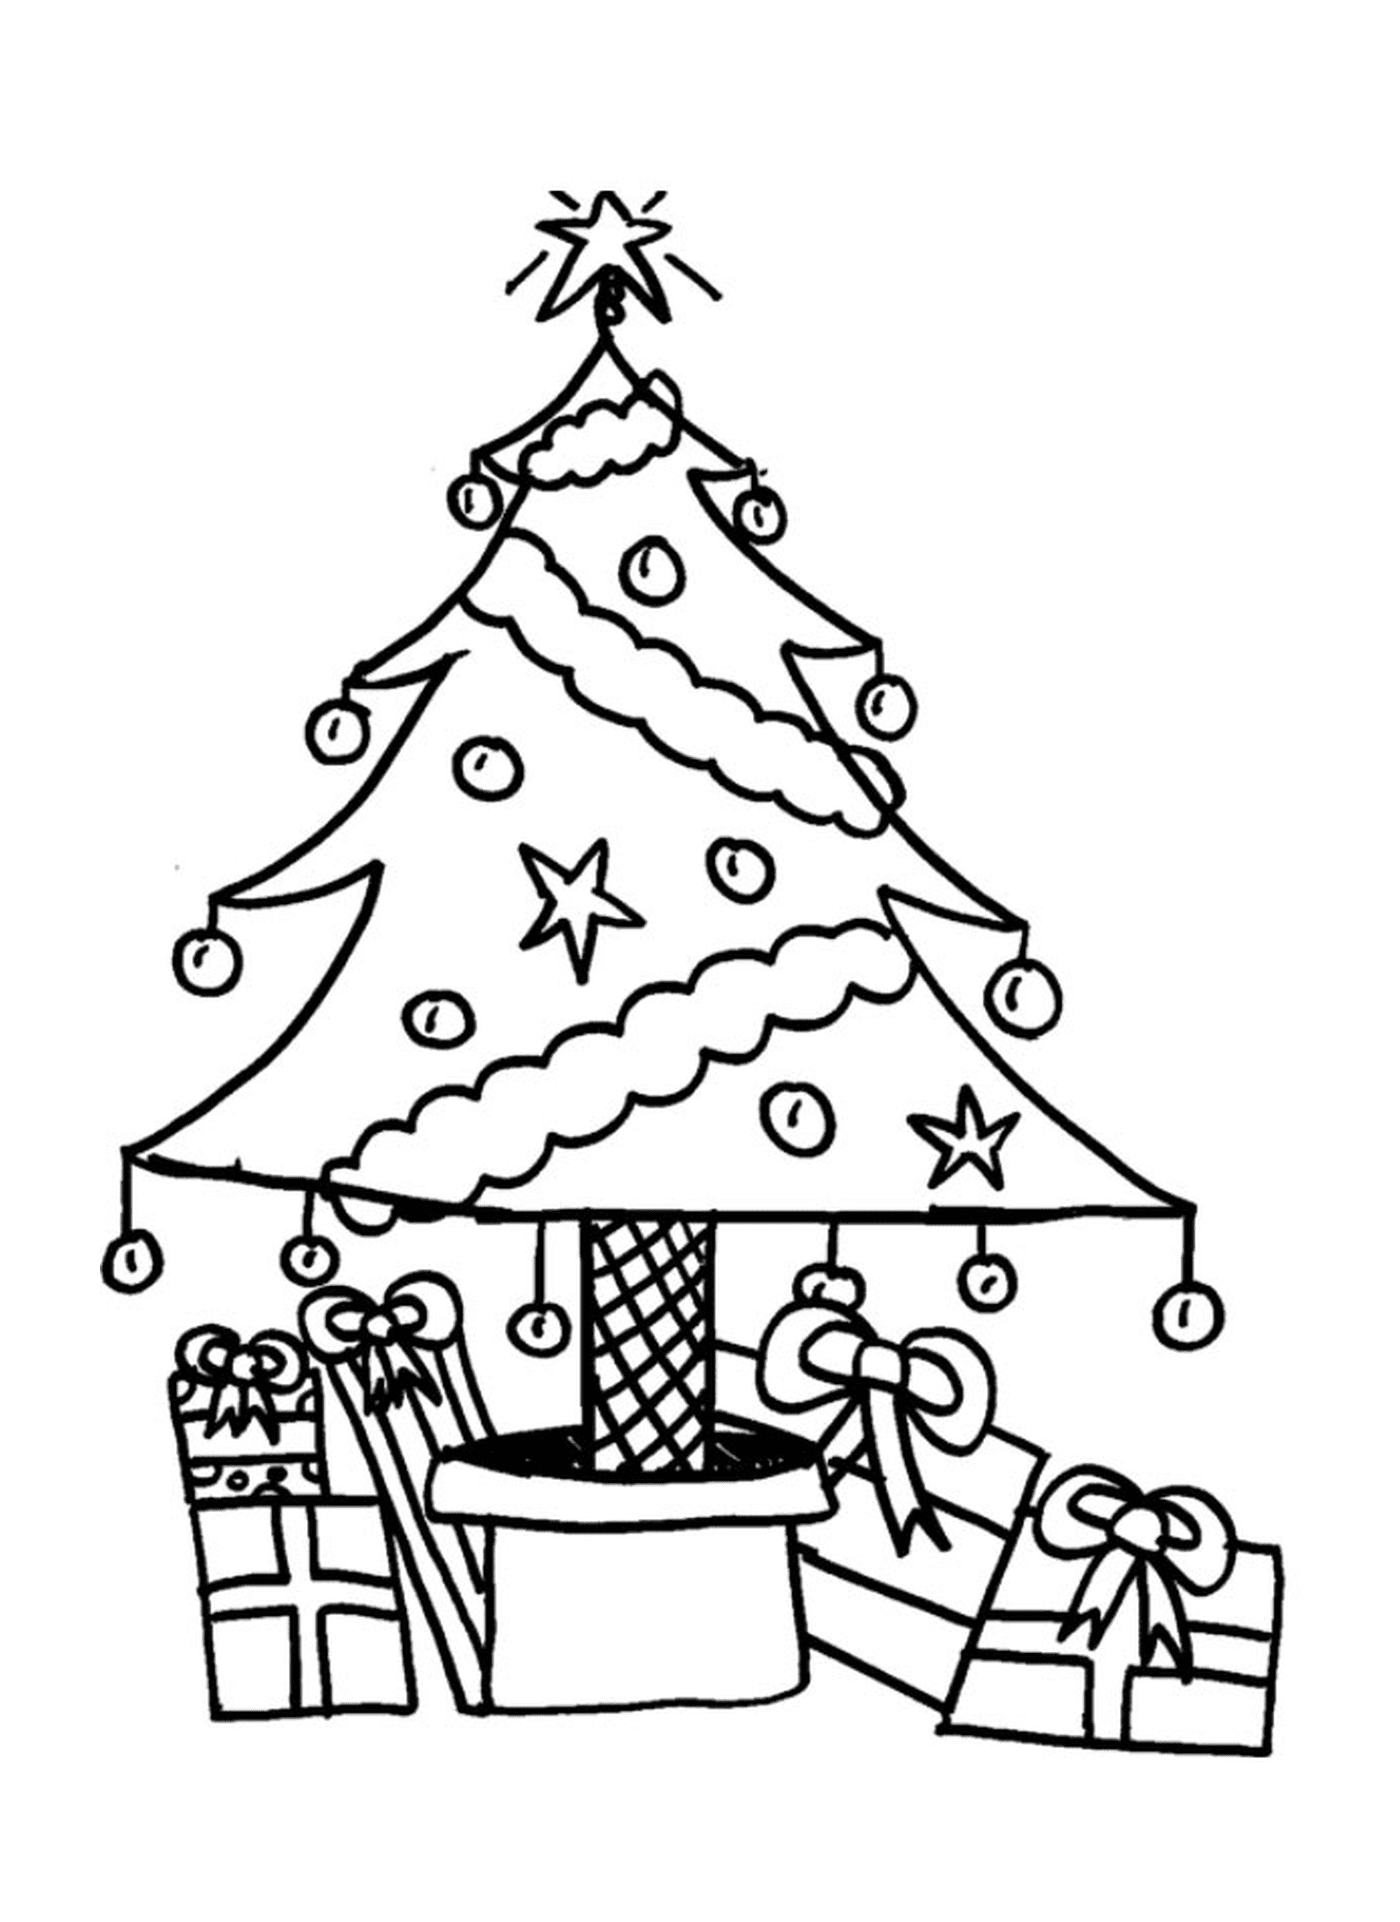  Рождественская елка с подарками под ней 